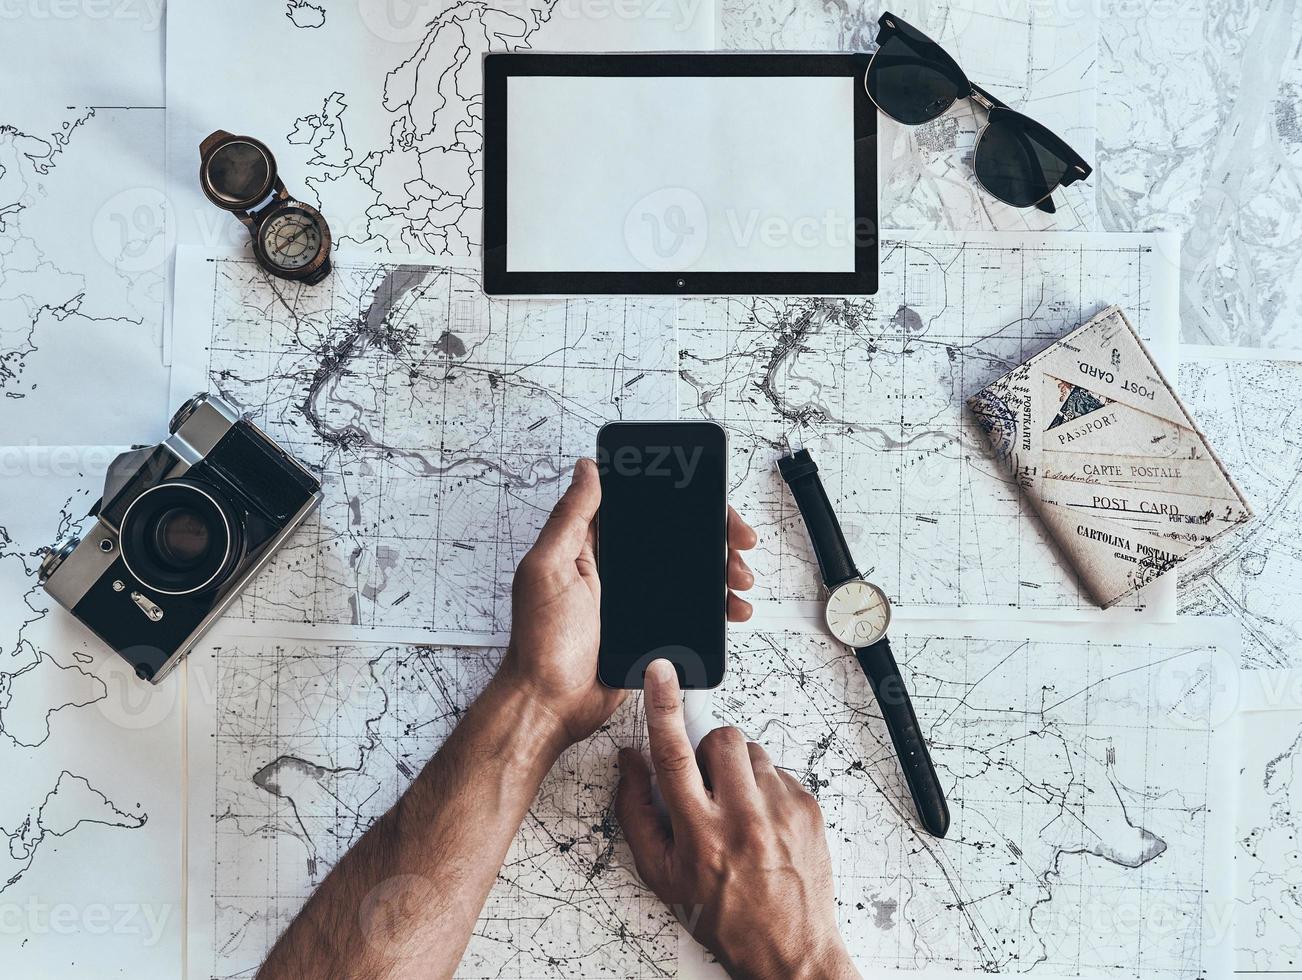 continue viajando. close-up vista superior do homem usando telefone inteligente com óculos de sol, câmera fotográfica, bússola, relógio e passaporte deitado no mapa ao redor foto